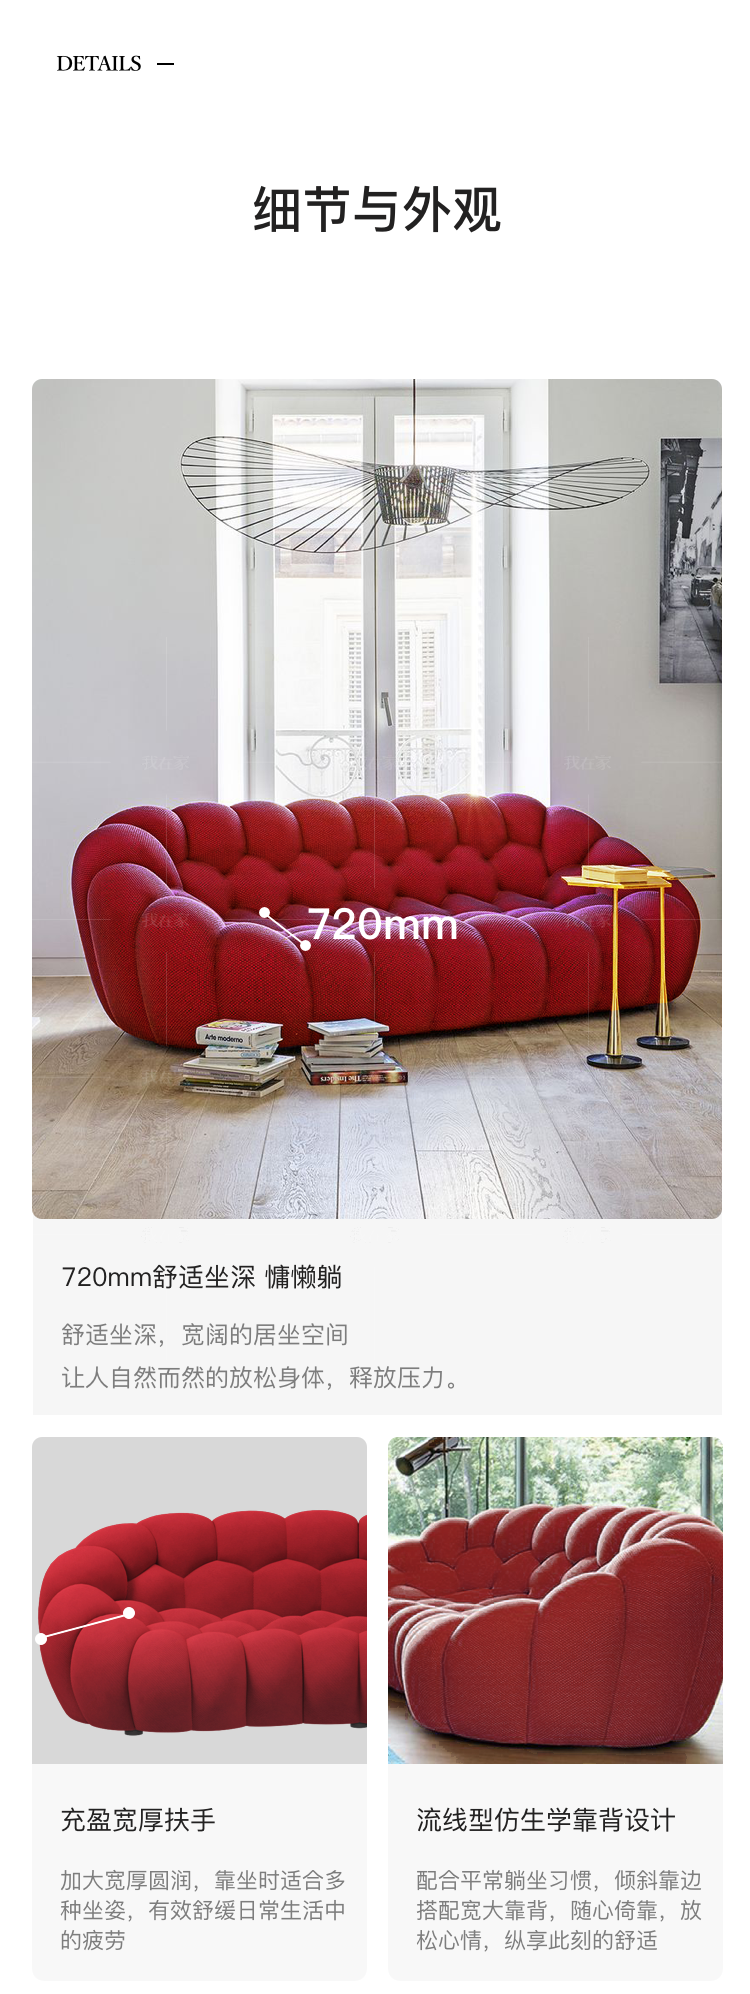 意式极简风格BUBBLE气泡沙发的家具详细介绍